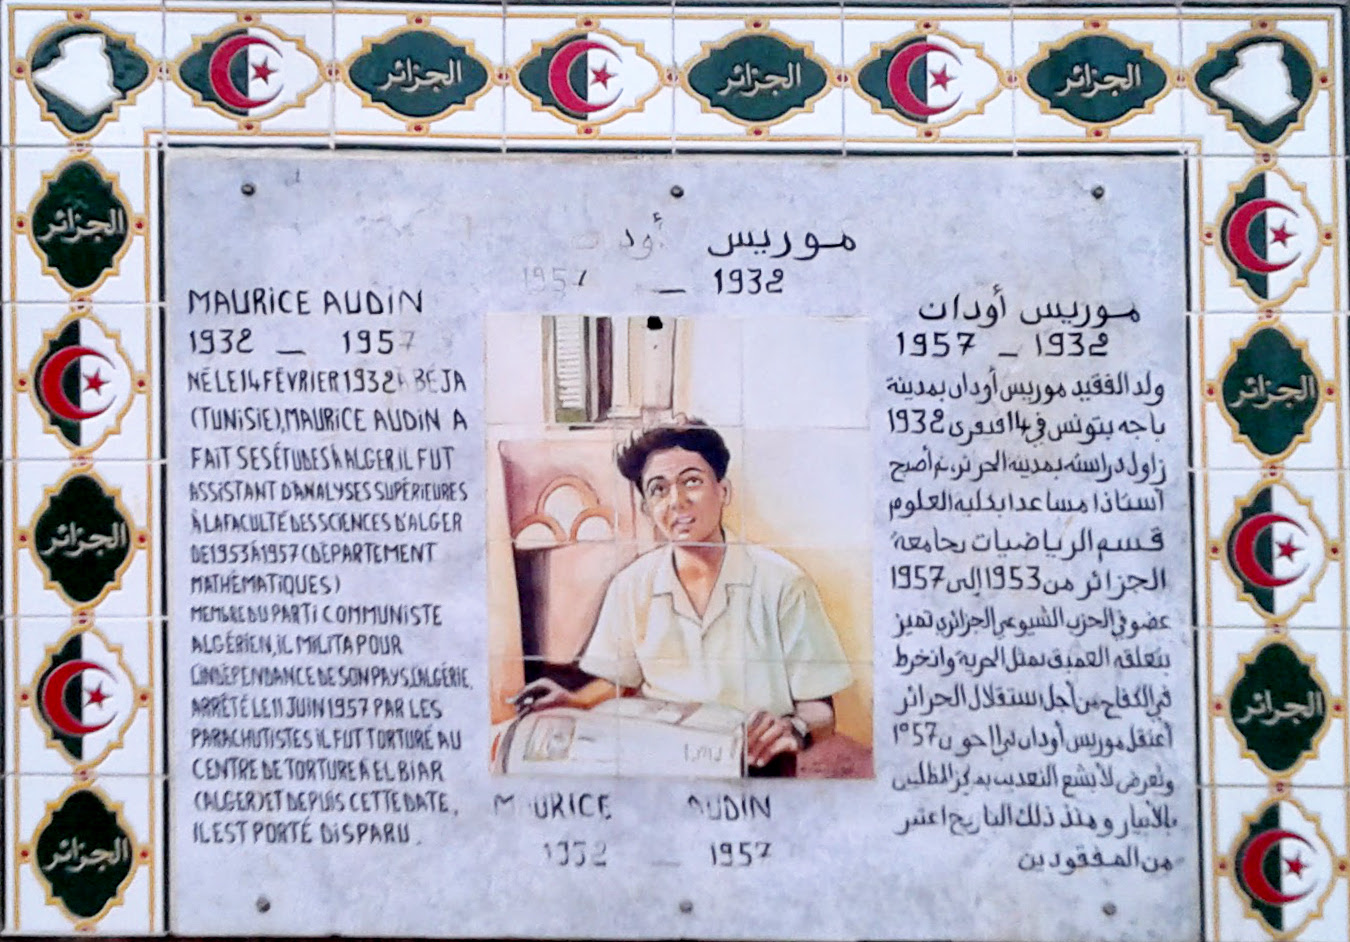 La plaque de la place Maurice Audin à Alger